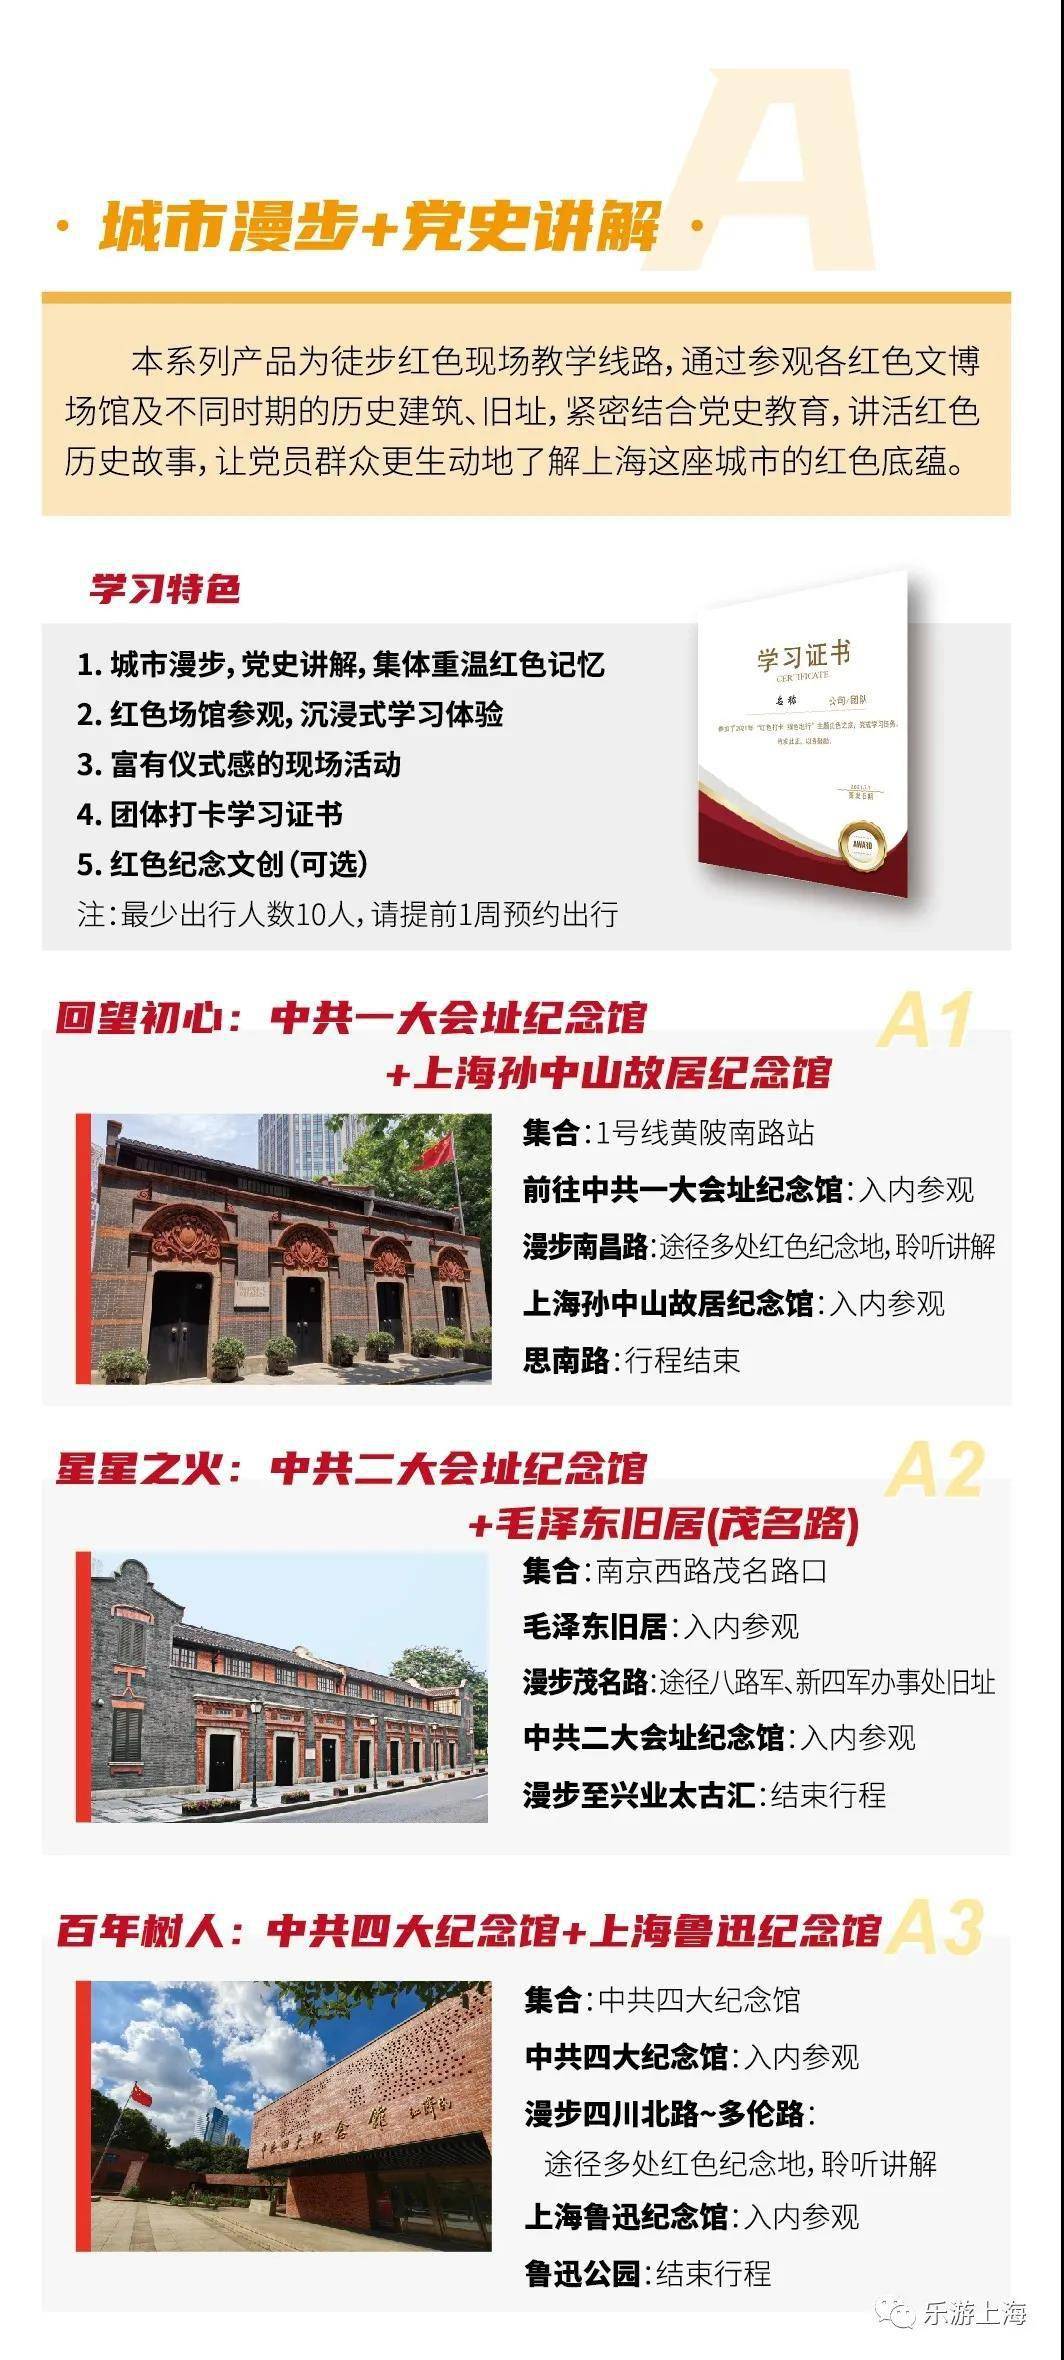 “红色打卡，绿色出行”！上海红色之旅主题产品发布